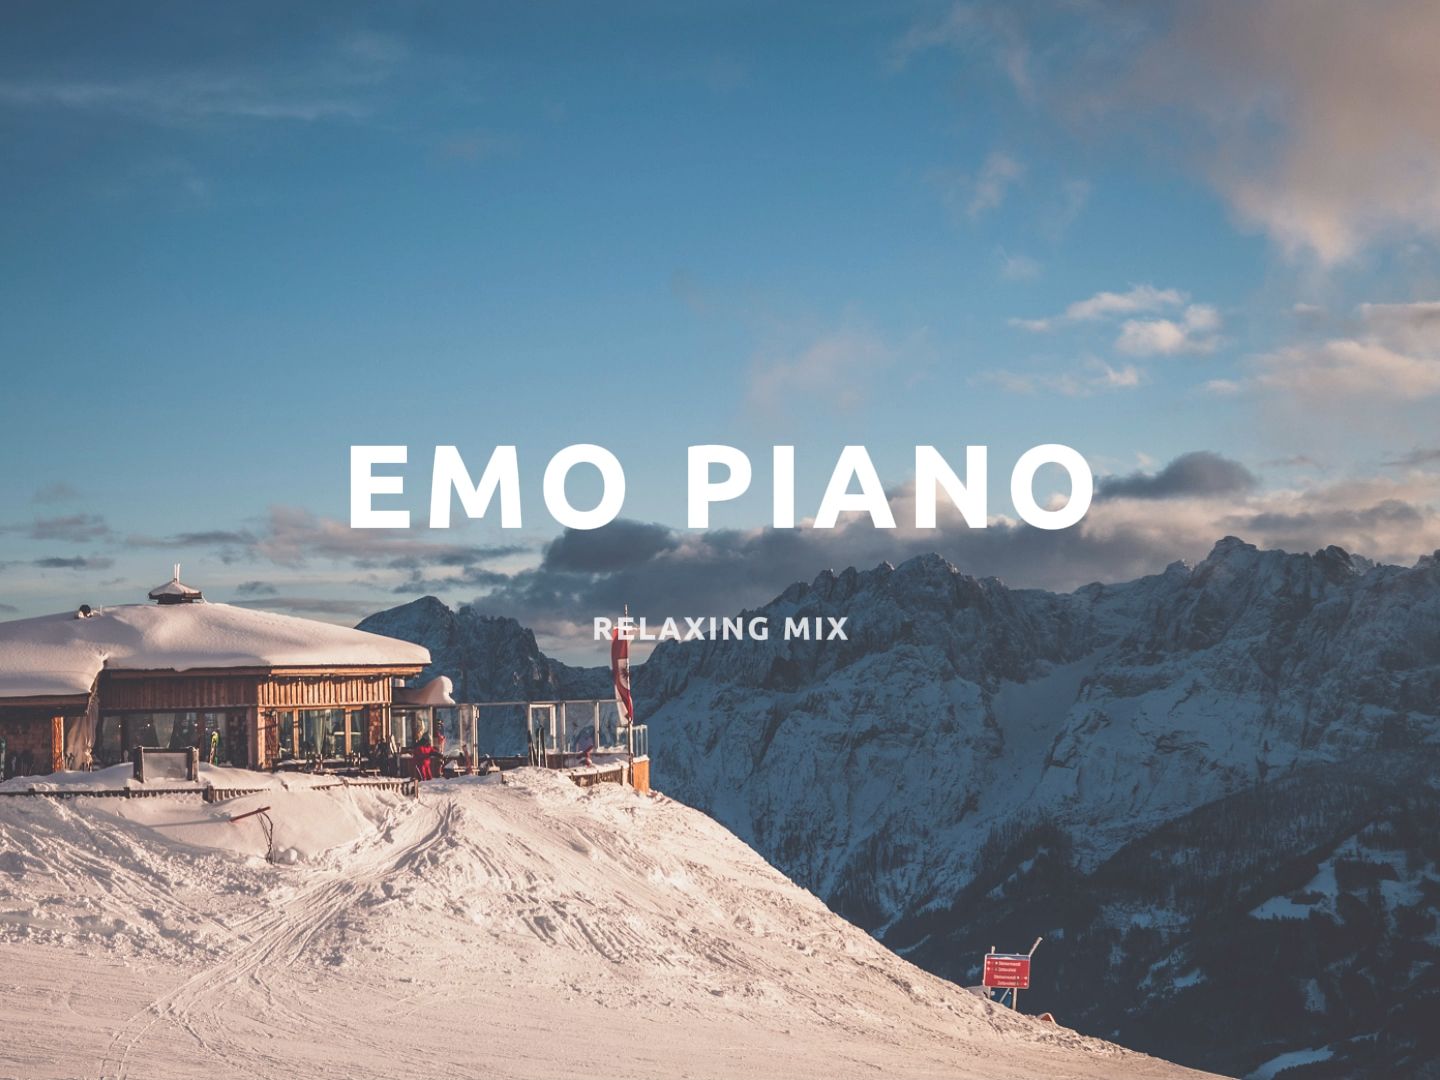 「EMO钢琴曲」歌单 | 悲伤幽静的氛围感 | 适合一个人慢慢听 | 值得无限循环